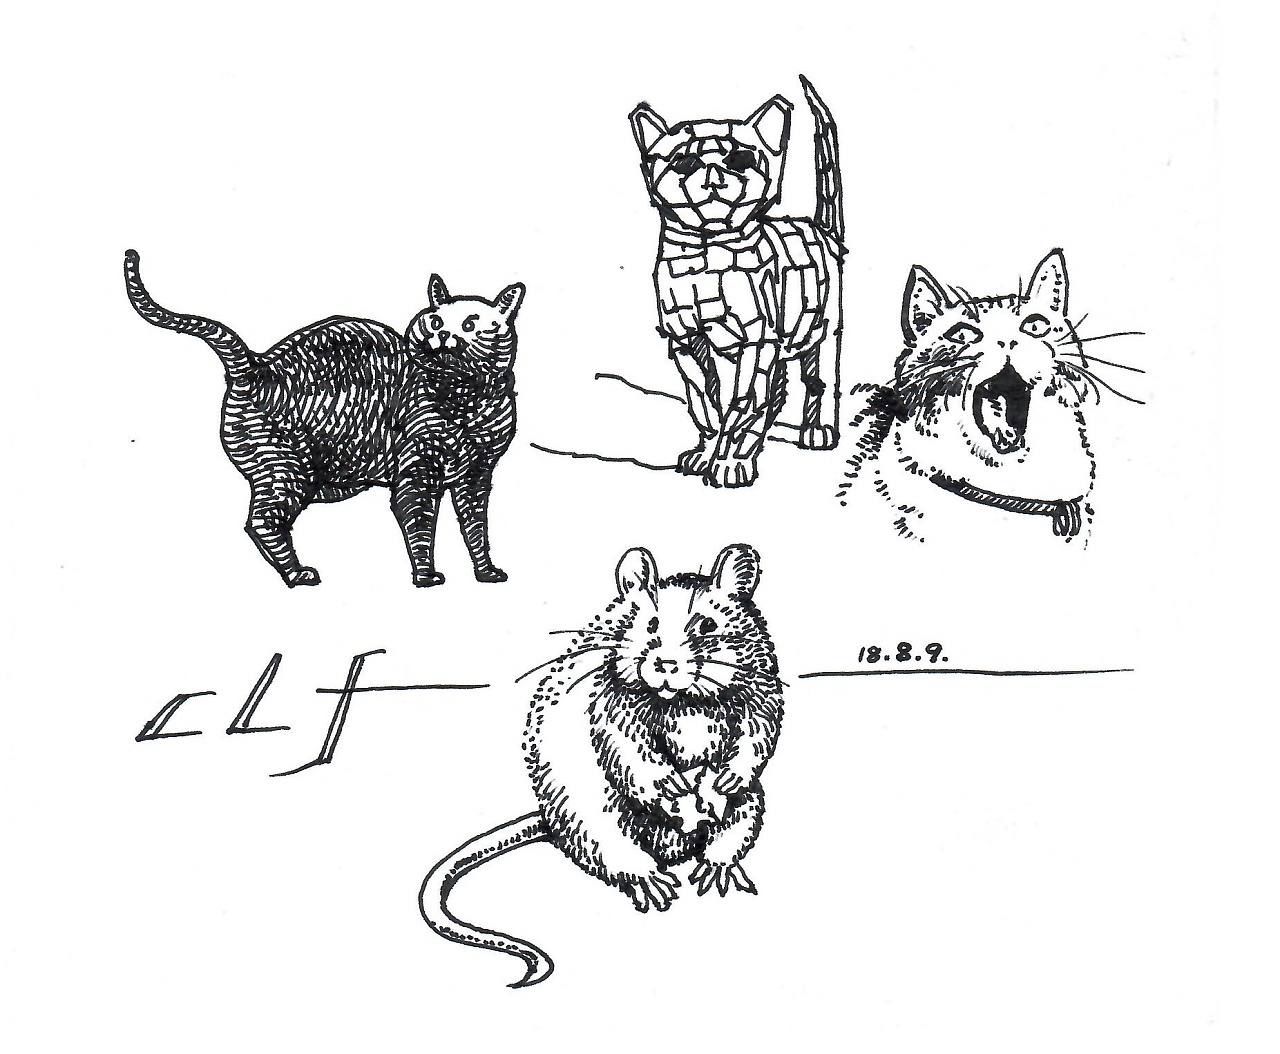 猫抓老鼠素描图片